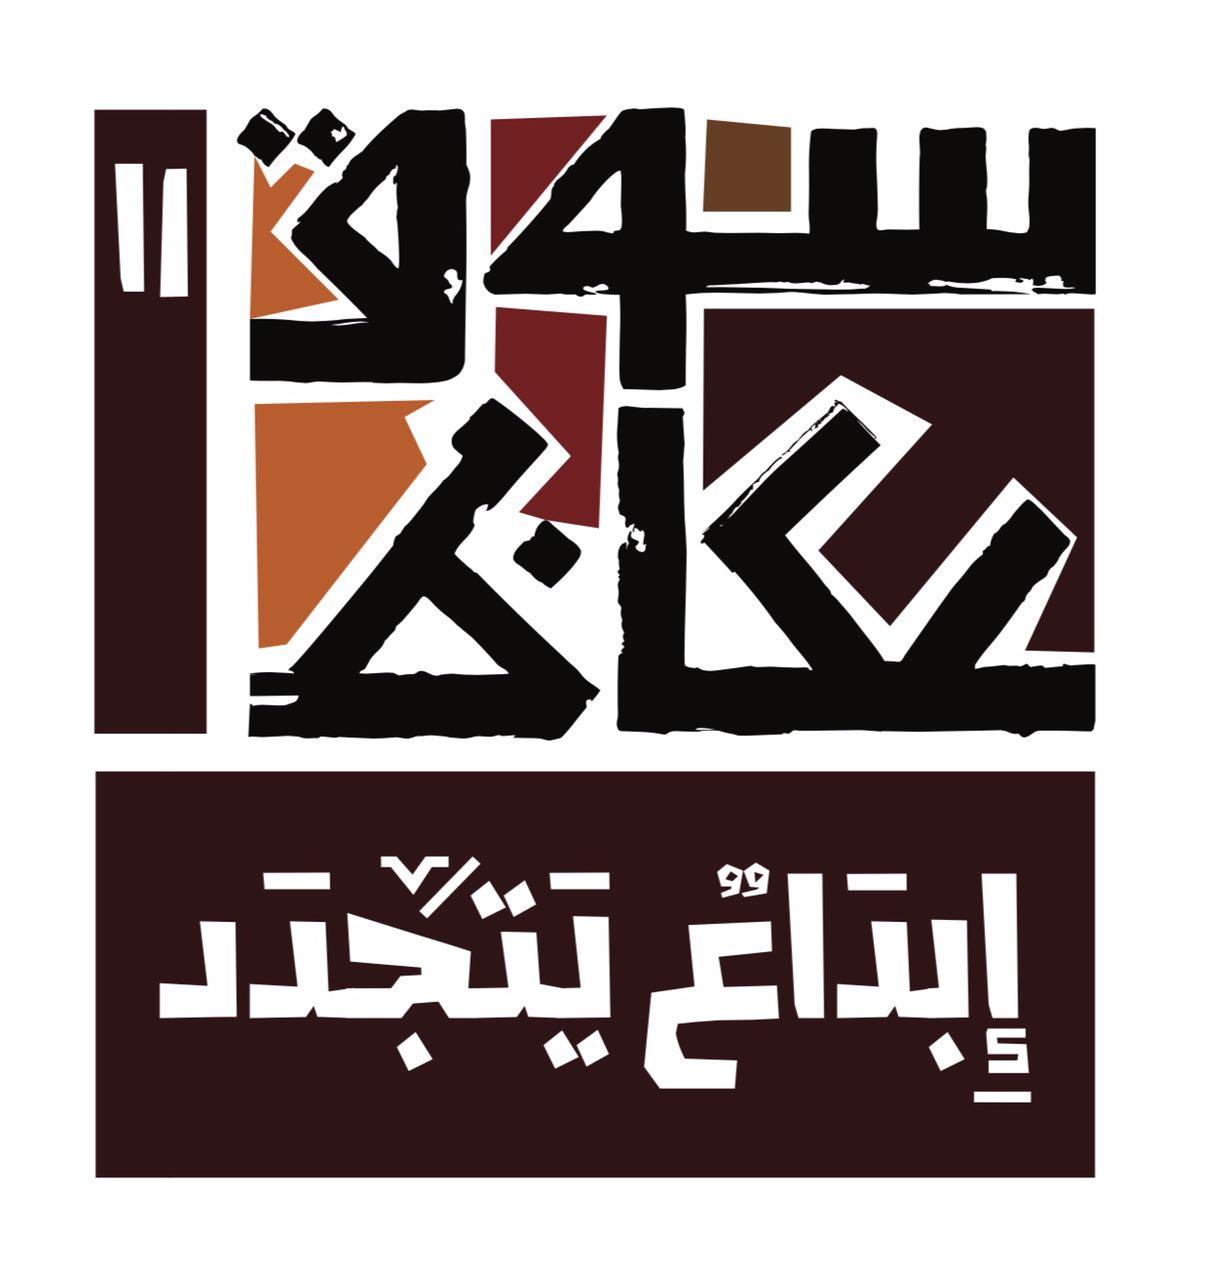 اللجنة الثقافية لسوق عكاظ تعتمد فتح باب المشاركة لجميع الوان الفنون الشعبية السعودية